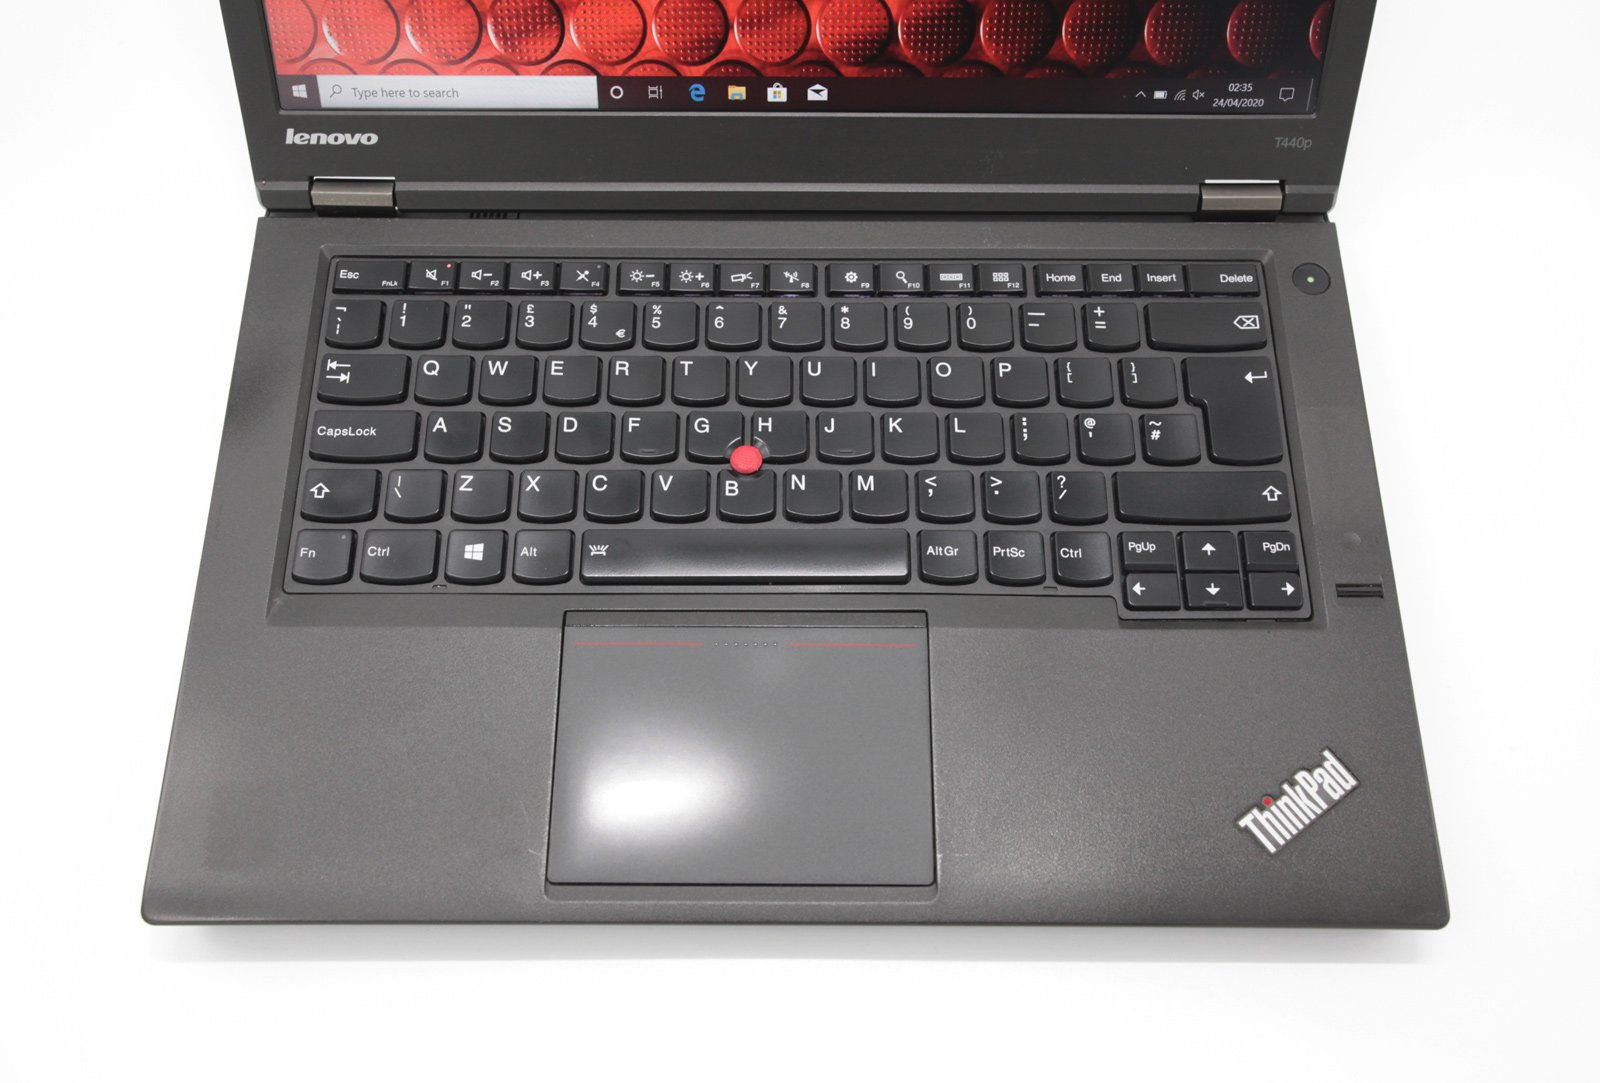 Lenovo T440P IPS Laptop: Core i7-4600M, 12GB RAM, 480GB SSD, 730M, VAT - CruiseTech